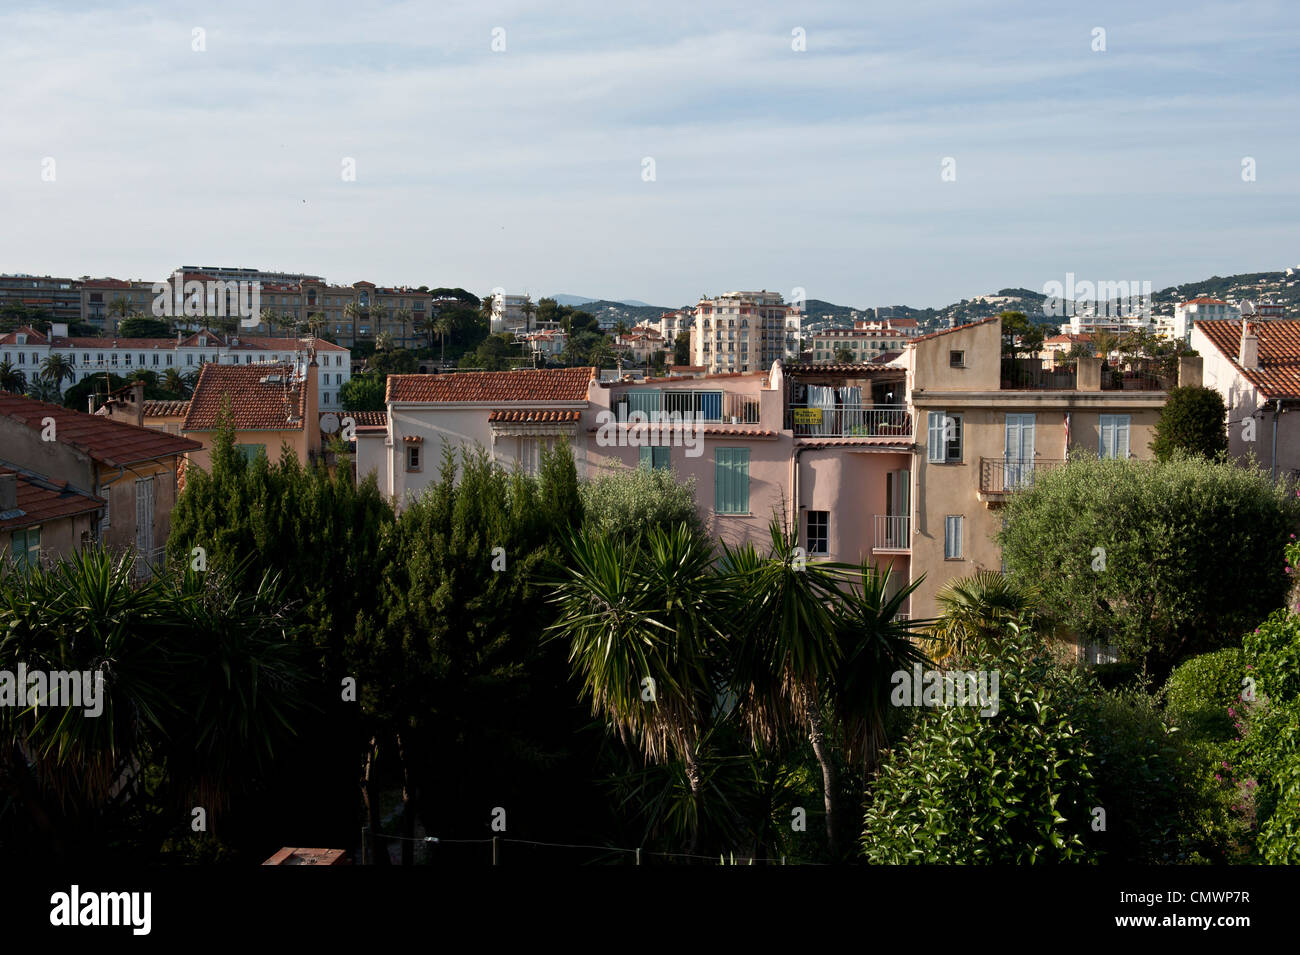 Die Skyline von Cannes, Frankreich-Nachbarschaft in üppigen, grünen Bäumen verbarrikadiert. Stockfoto